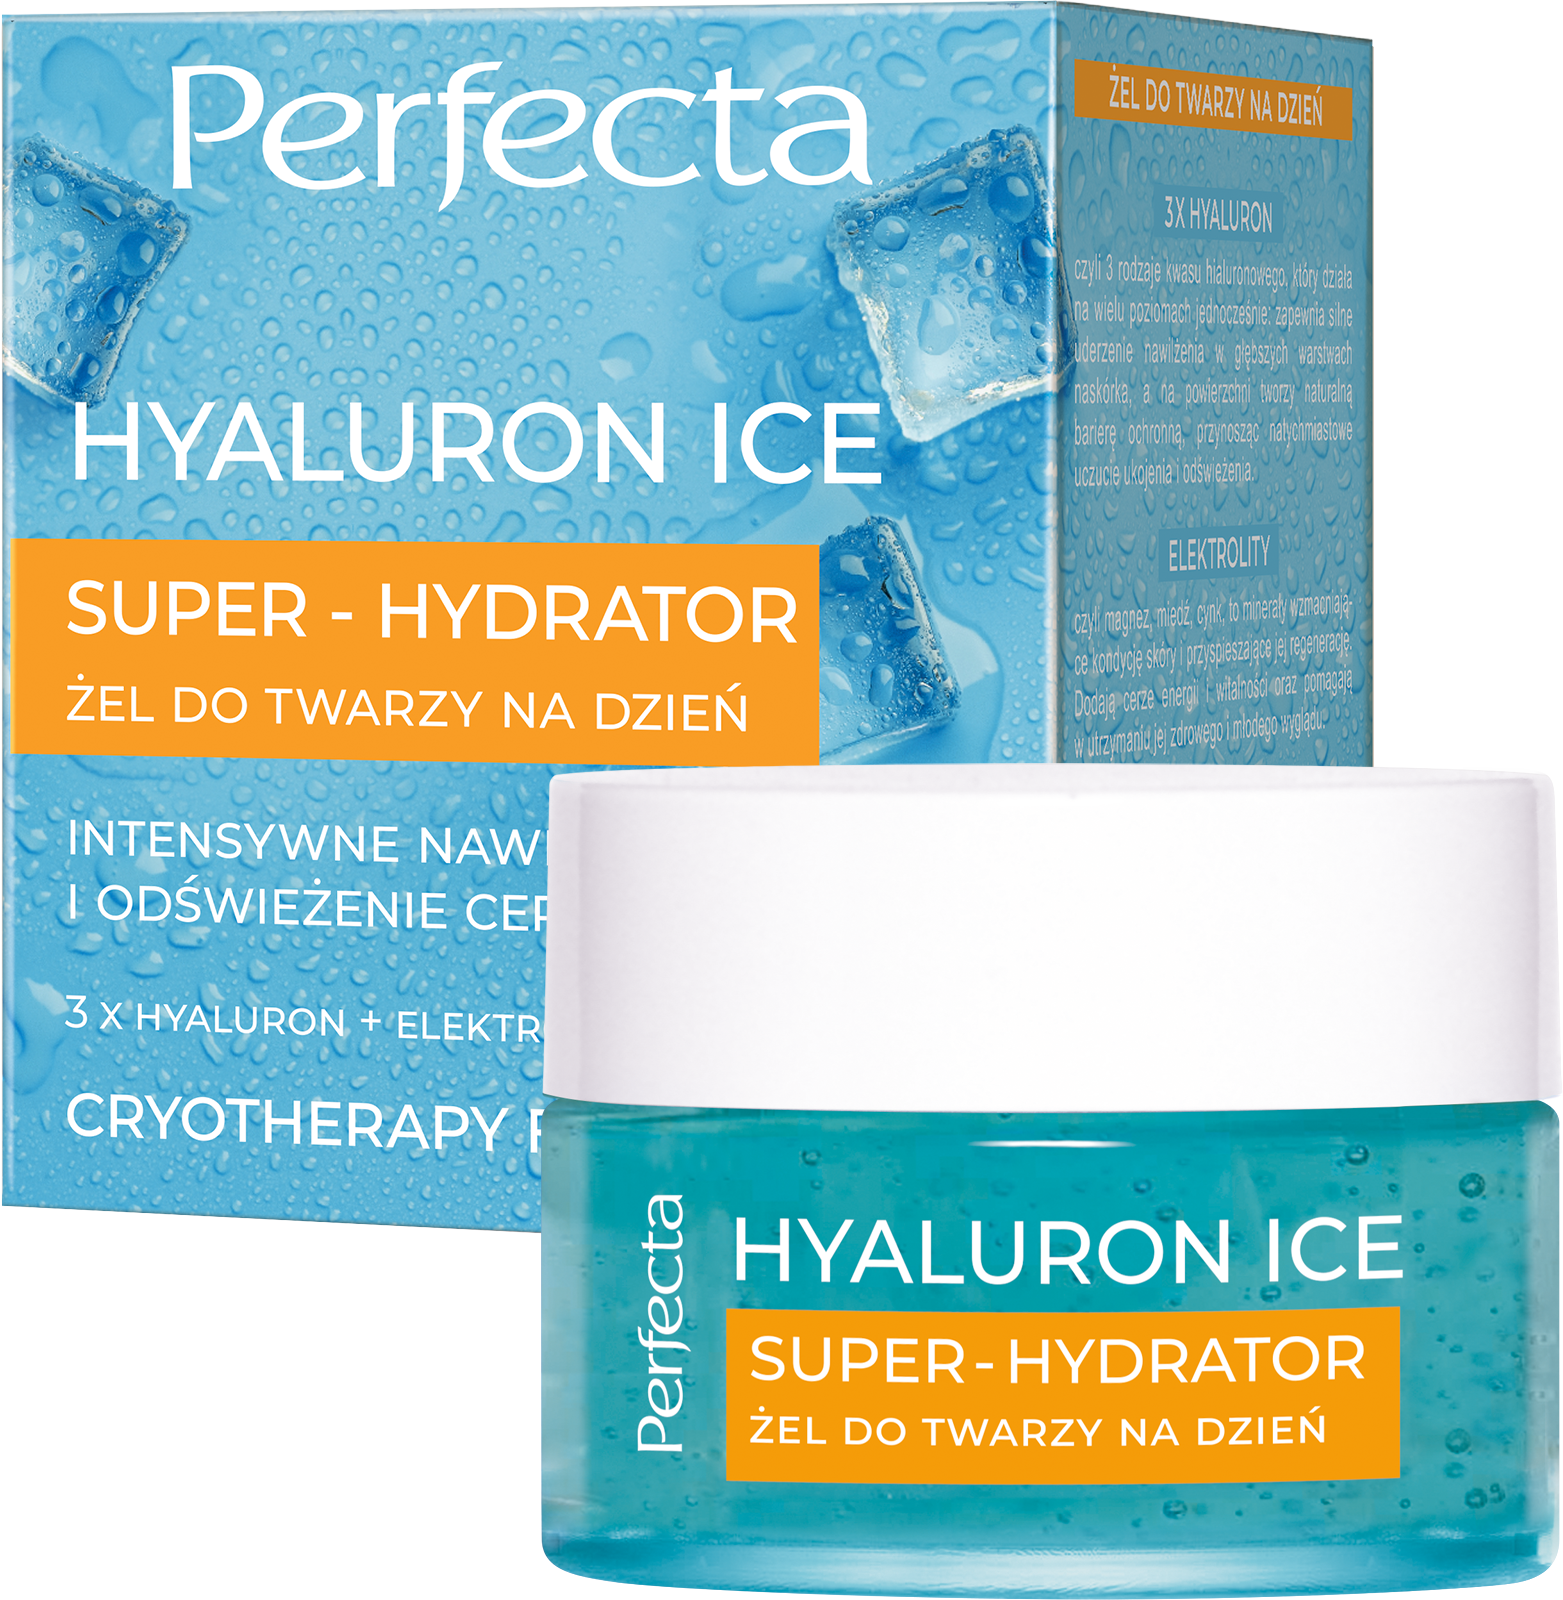 PERFECTA HYALURON ICE Super-Hydrator Żel do twarzy na dzień